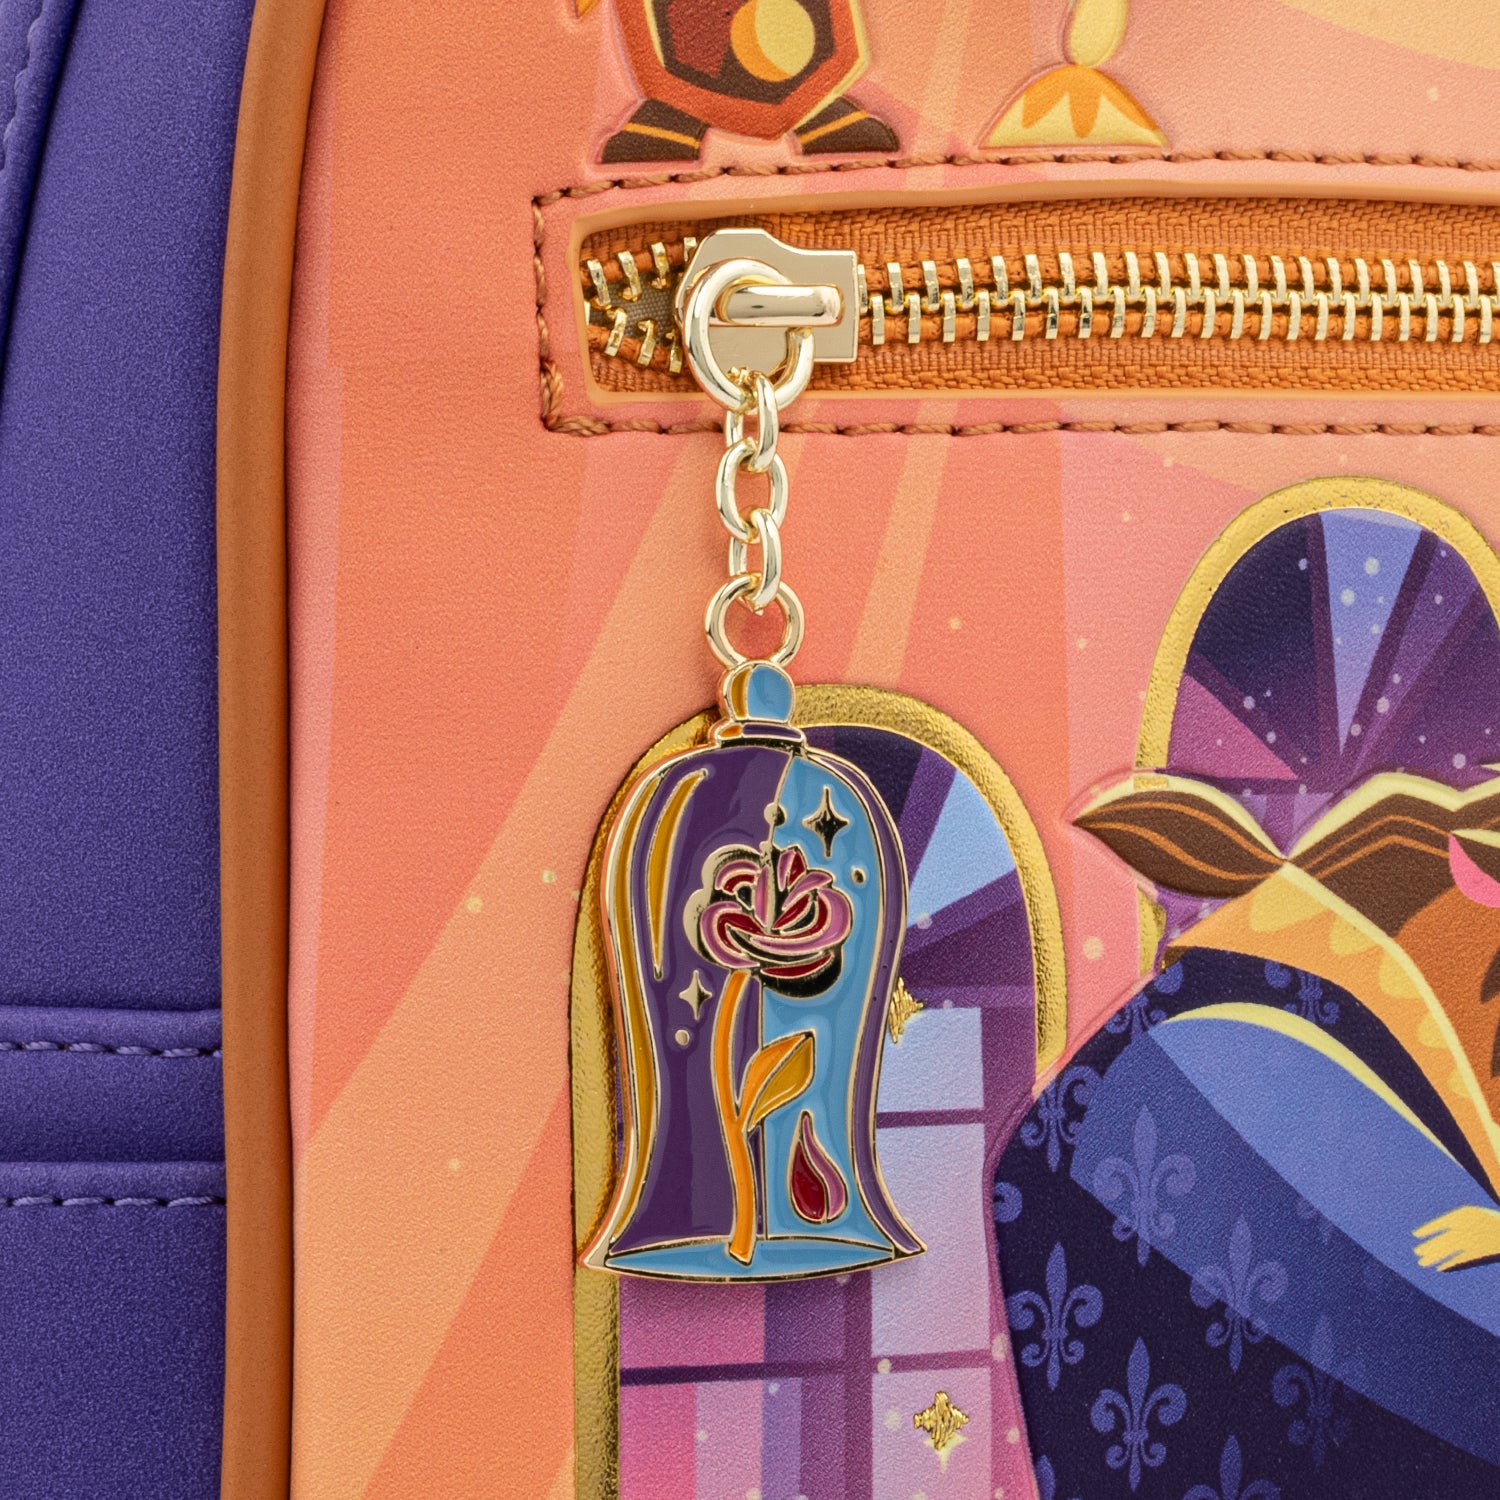 Disney | Beauty and The Beast Ballroom Scene Mini Backpack